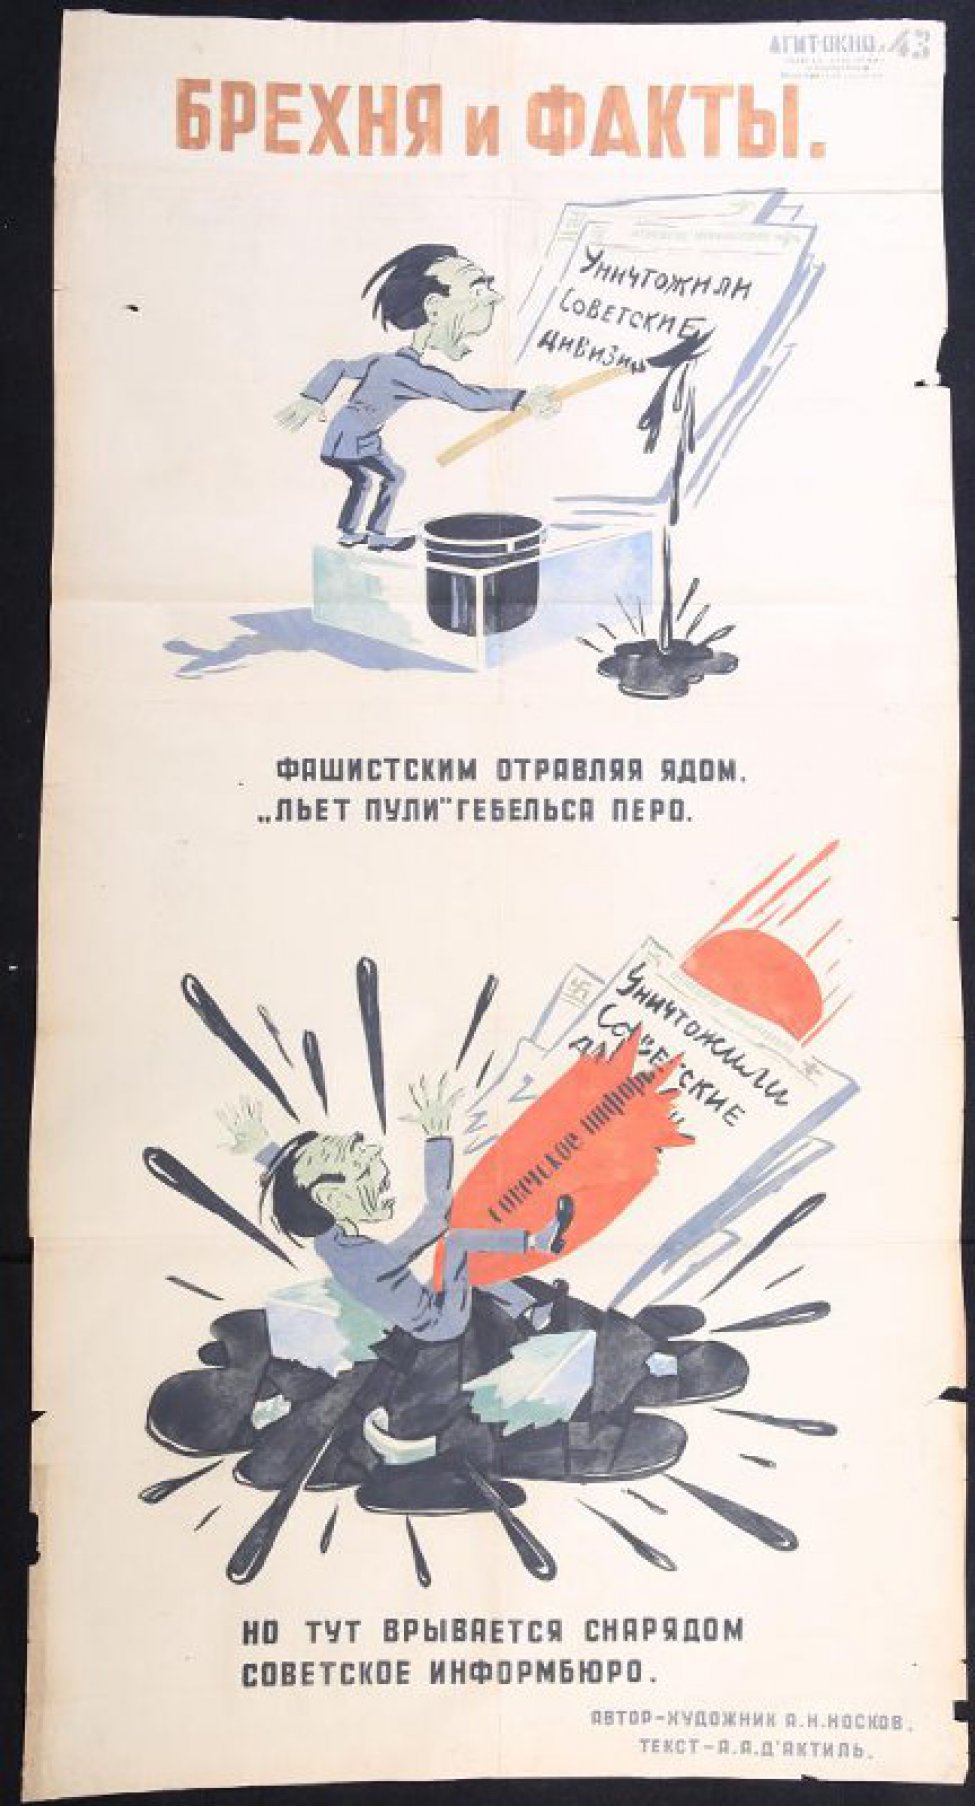 Помещено 2 рисунка: 1) Геббельс стоит на чернильнице и пишет, текст: "фашистским отравляя ядом"; 2) на разбитой чернильнице в луже чернил сидит Геббельс в него вонзается красный снаряд, текст: "но тут врывается снарядом советское информбюро..."